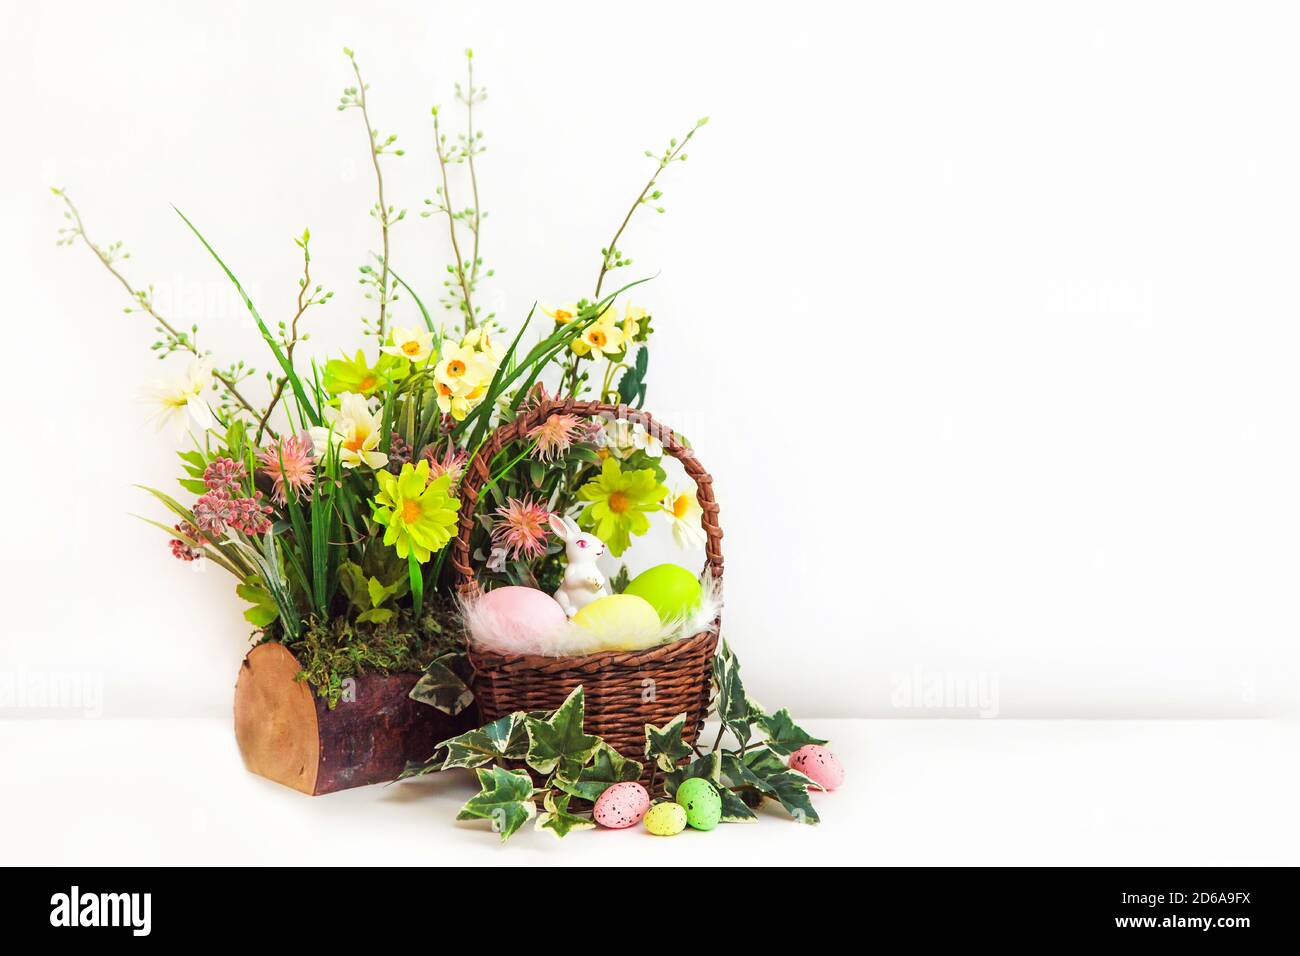 Buona Pasqua. Congratulazioni pasqua sfondo con copia spazio. Uova di Pasqua colorate e fiori con un piccolo coniglietto bianco in cestino. Stump con fiori. Foto Stock